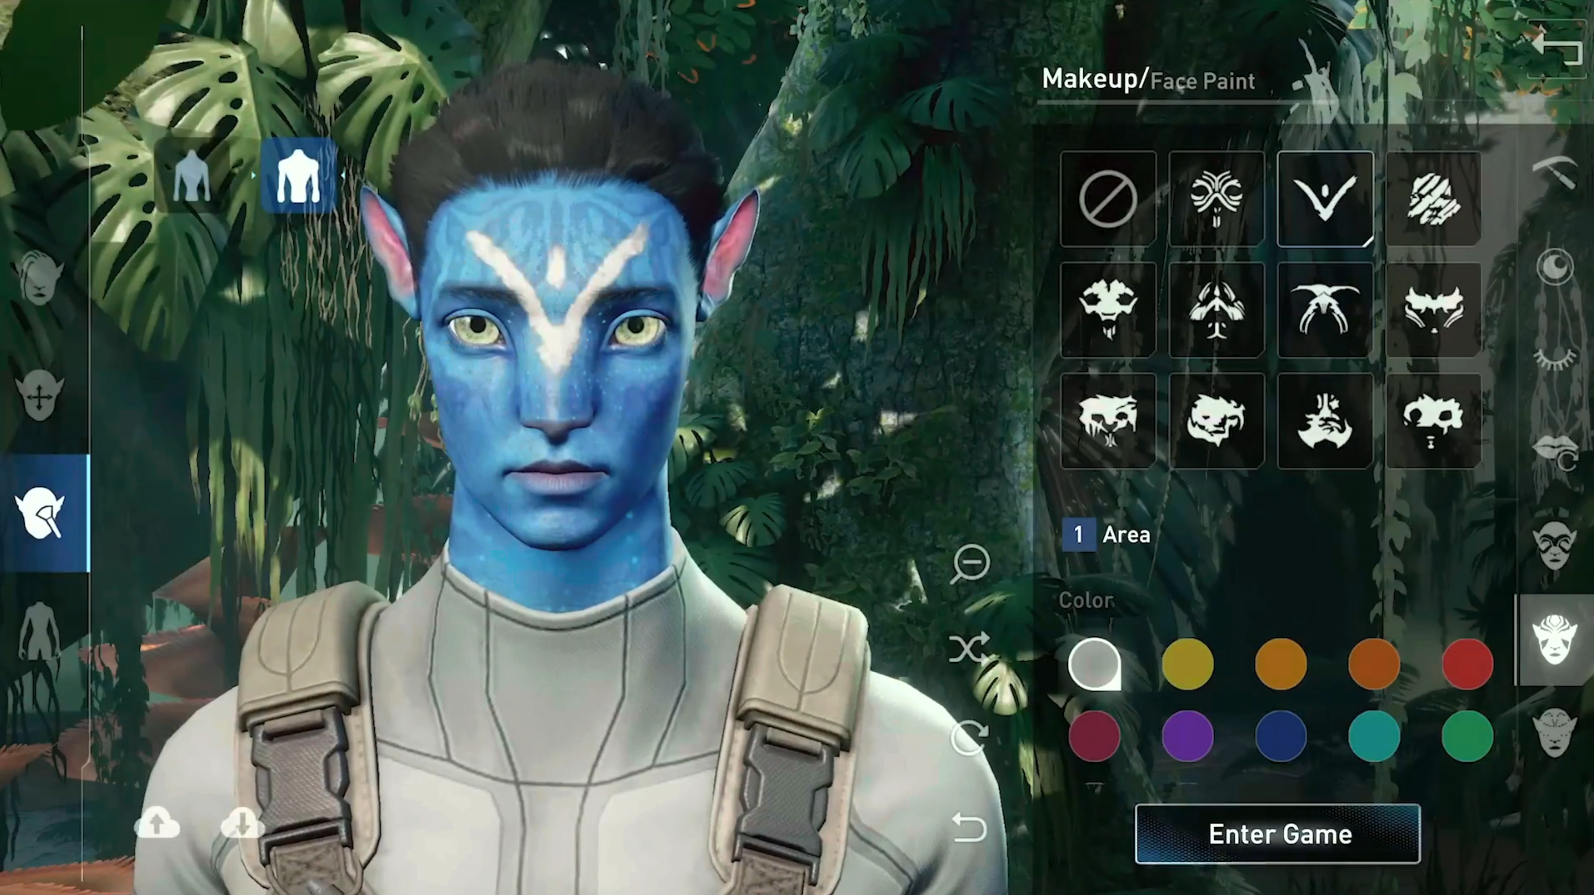 Avatar hợp tác Disney 2024 là sự kết hợp tuyệt vời giữa nhà sản xuất game và hãng Disney. Khám phá những hình ảnh đẹp mắt của các nhân vật Disney cùng tựa game Avatar đang chờ đợi bạn để trải nghiệm! Bạn sẽ không thể bỏ qua cơ hội này!